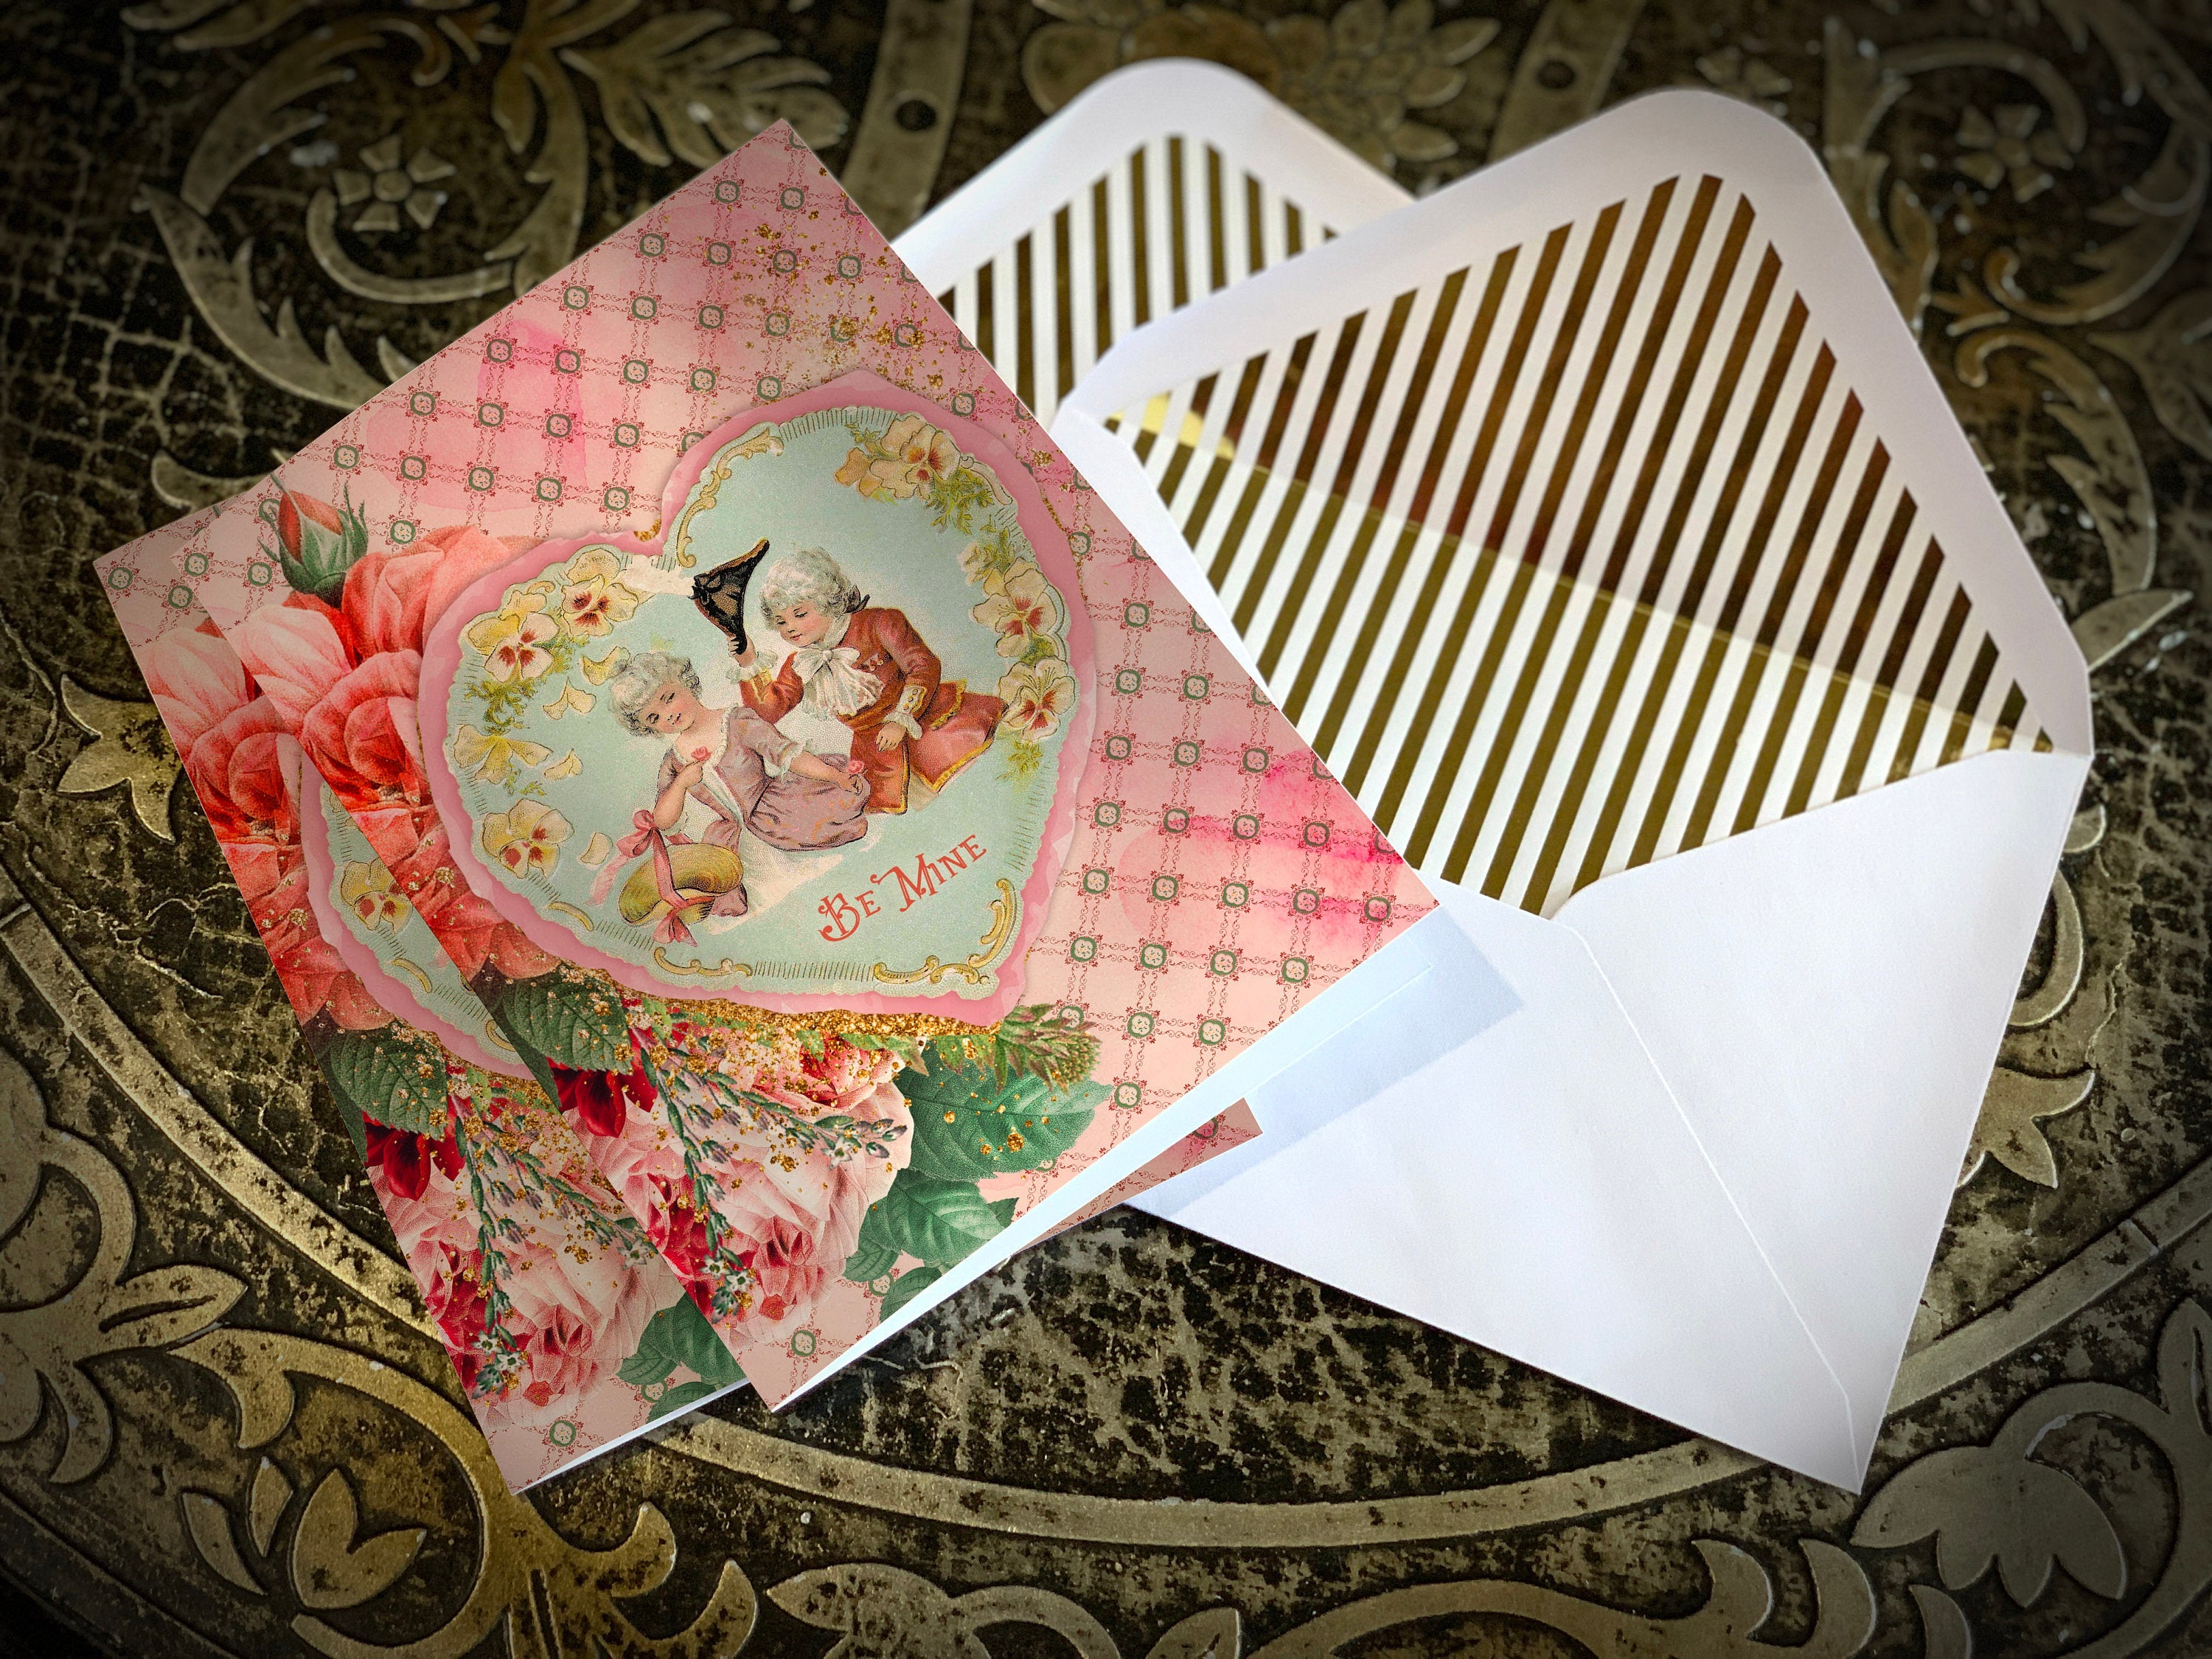 Be Mine, Vintage Victorian Valentine Greeting Card with Elegant Gold Foil Envelopes, 1 Card/Envelope